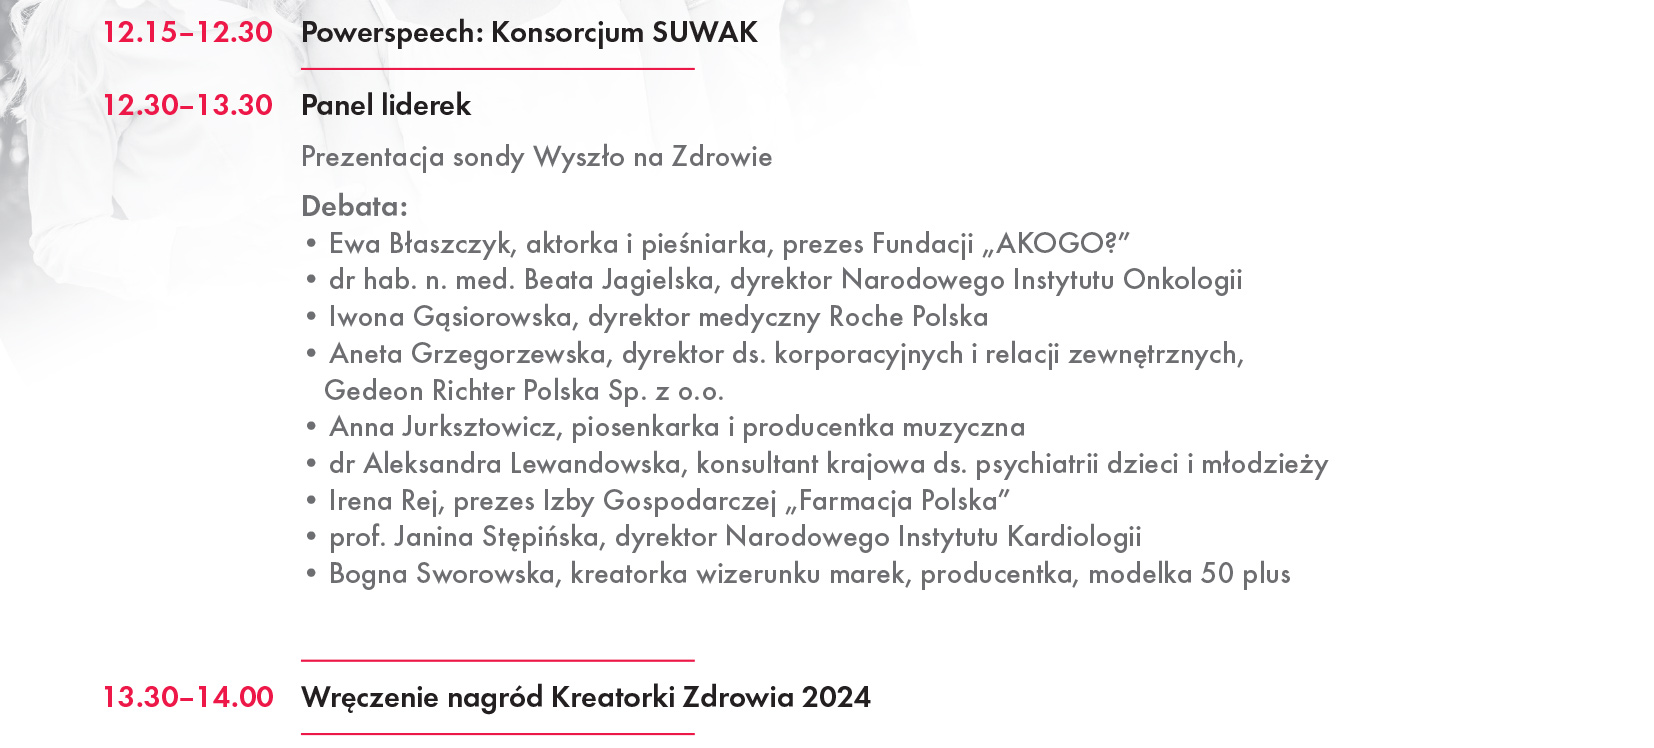 KZK 2024 - Program